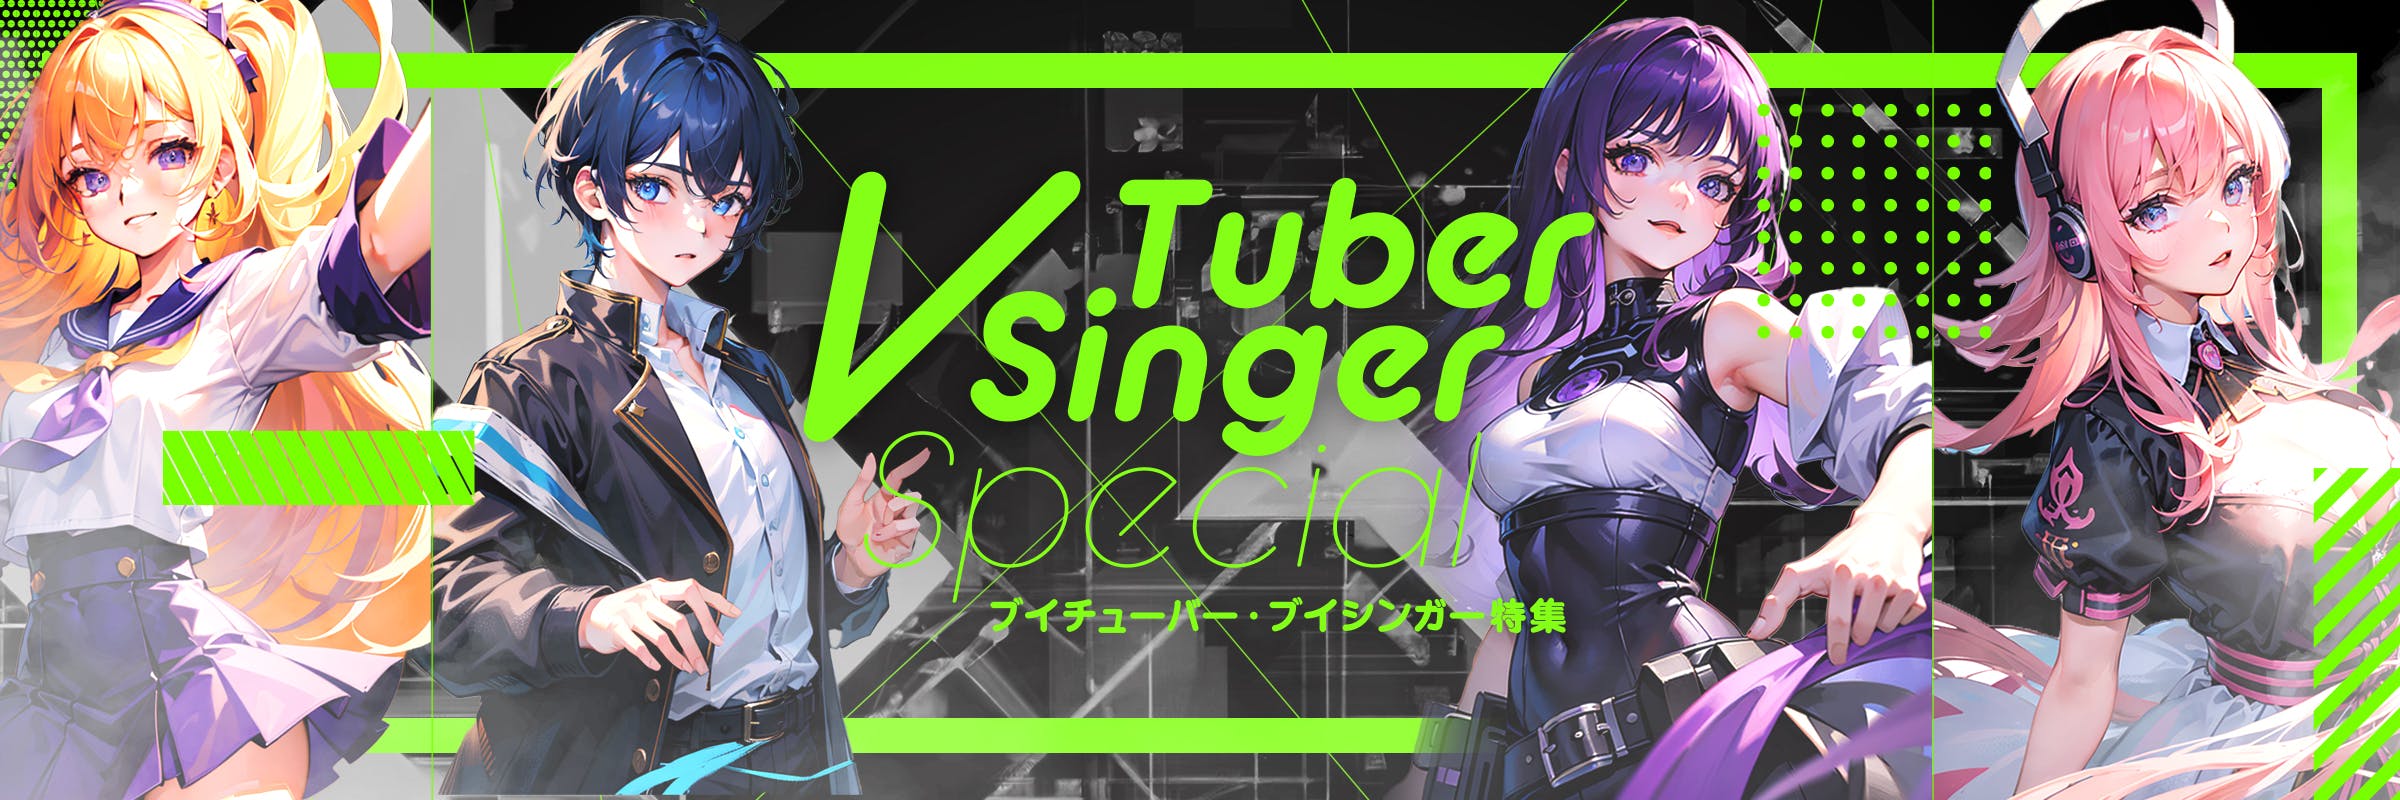 VTuber / VSinger 特集